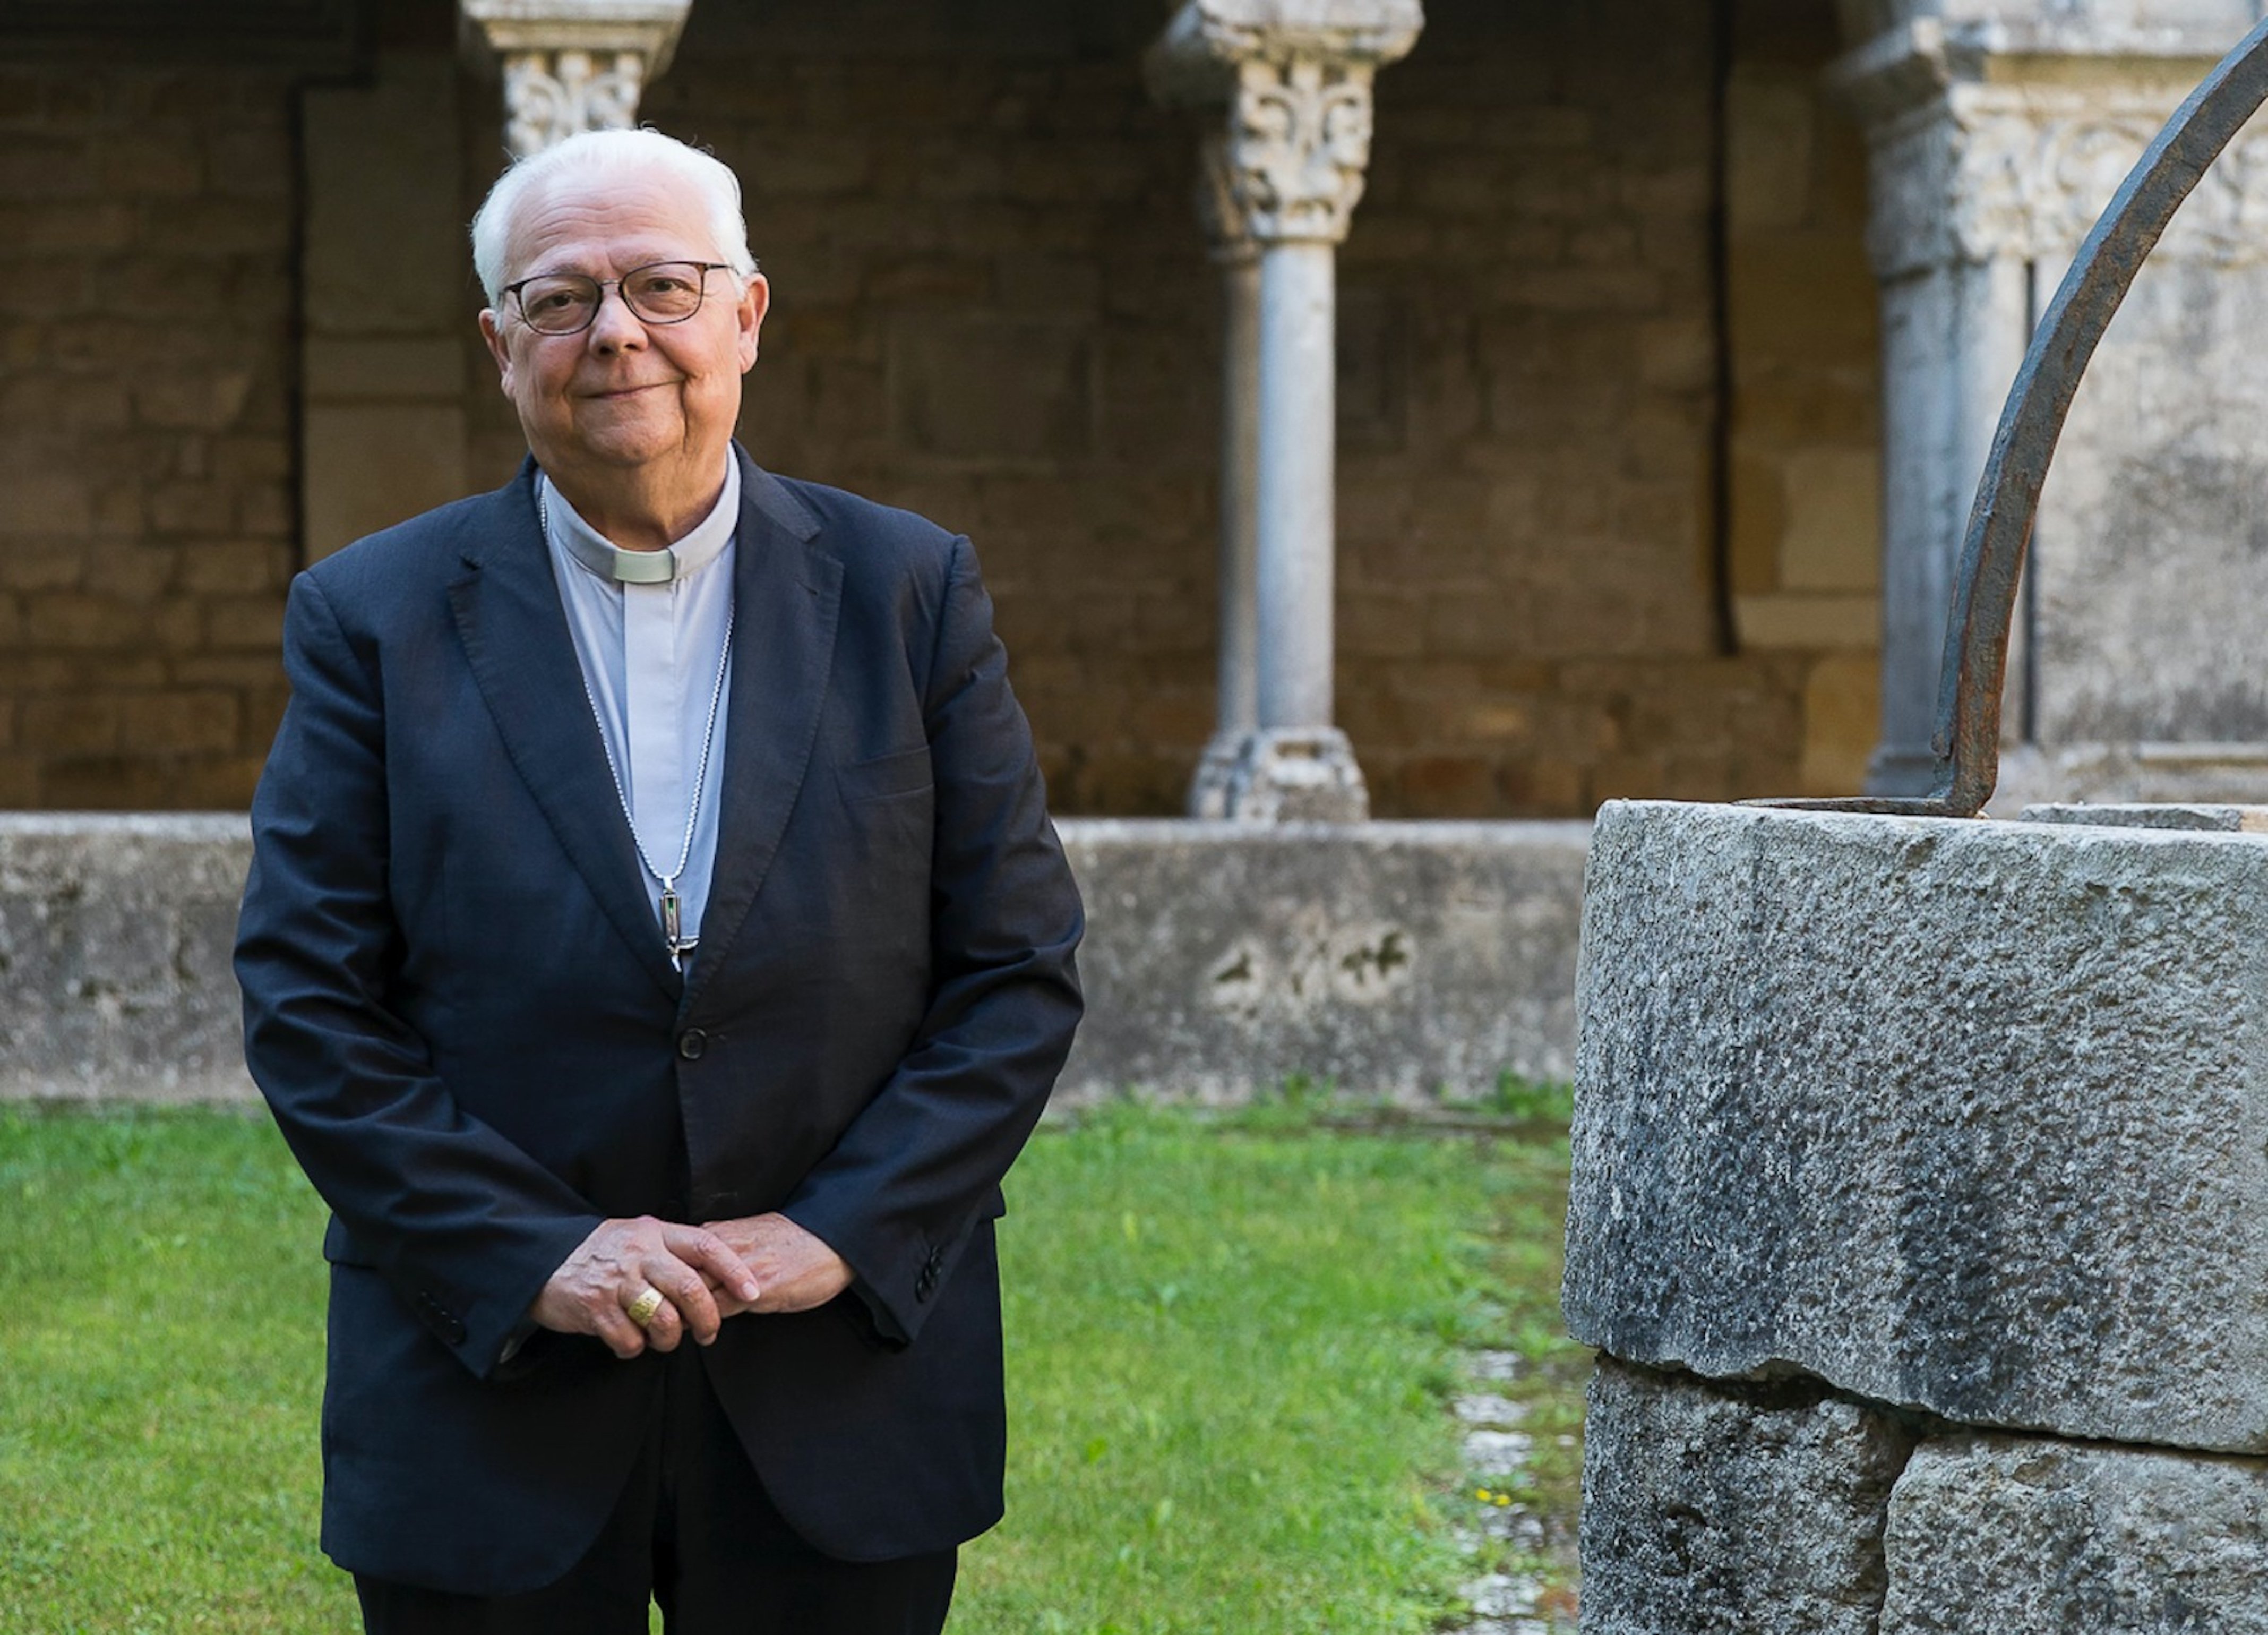 Mor el bisbe de Girona Francesc Pardo als 75 anys